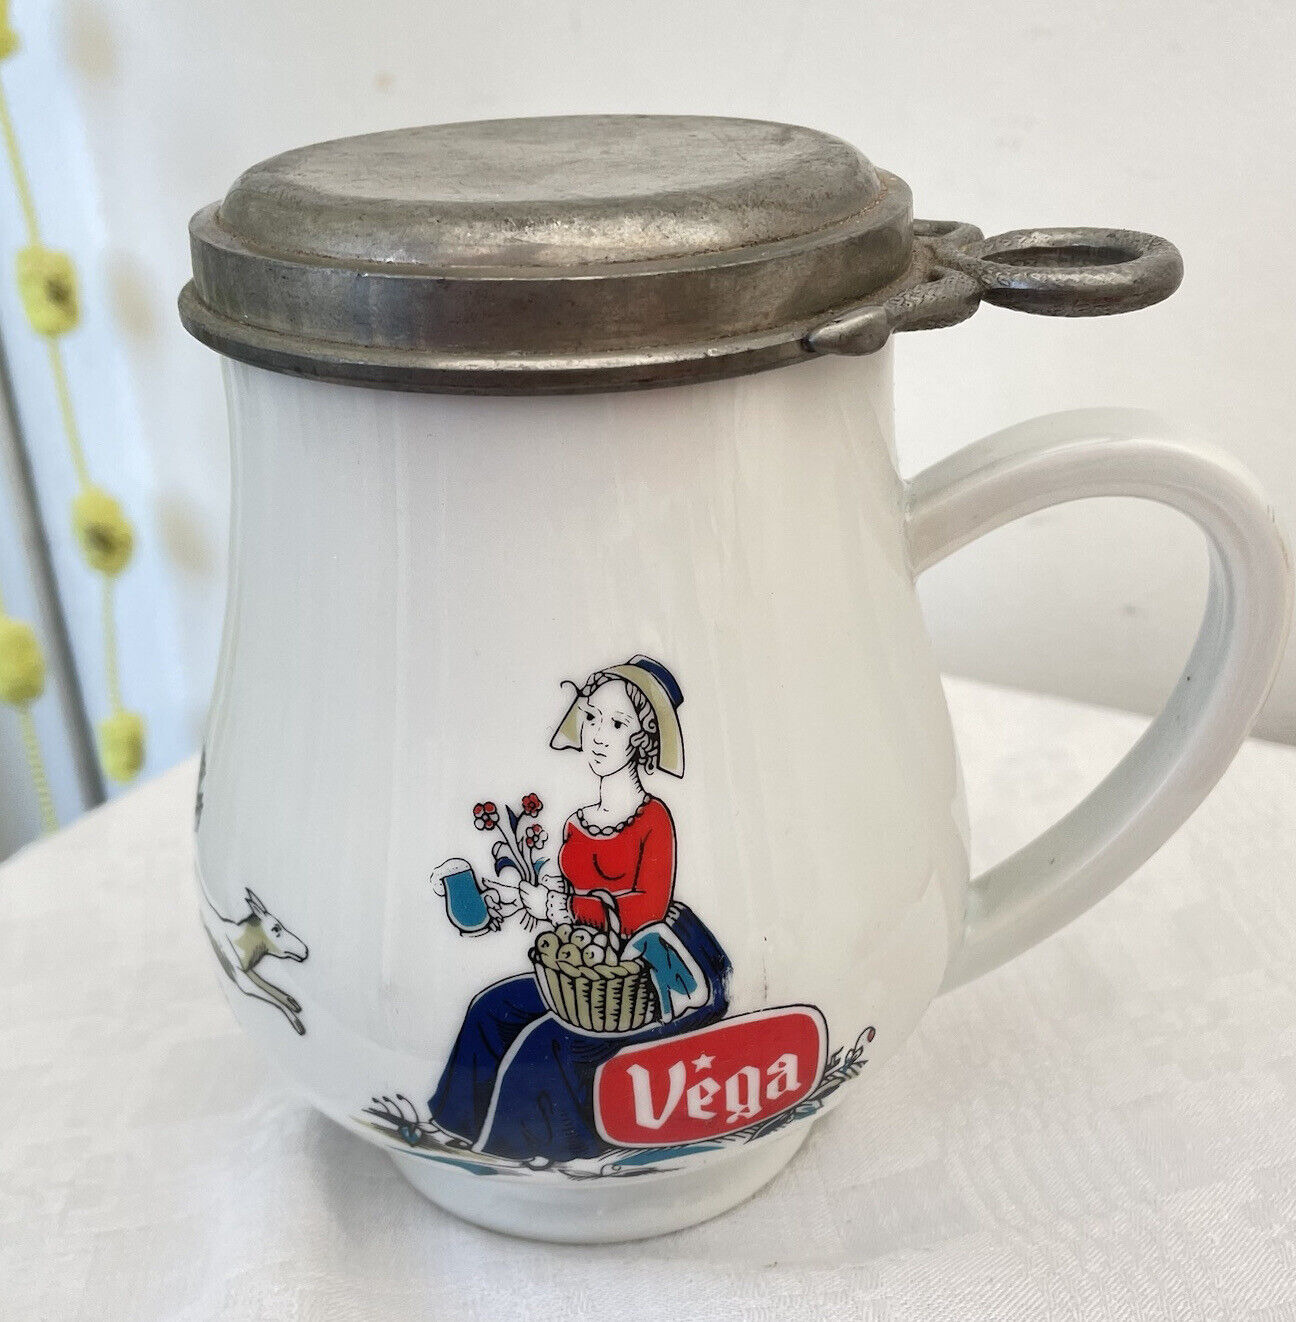 Vintage Vega Beer Stein Mug Pewter Lid Porcelain Ceramic French Flanders 5 ½”